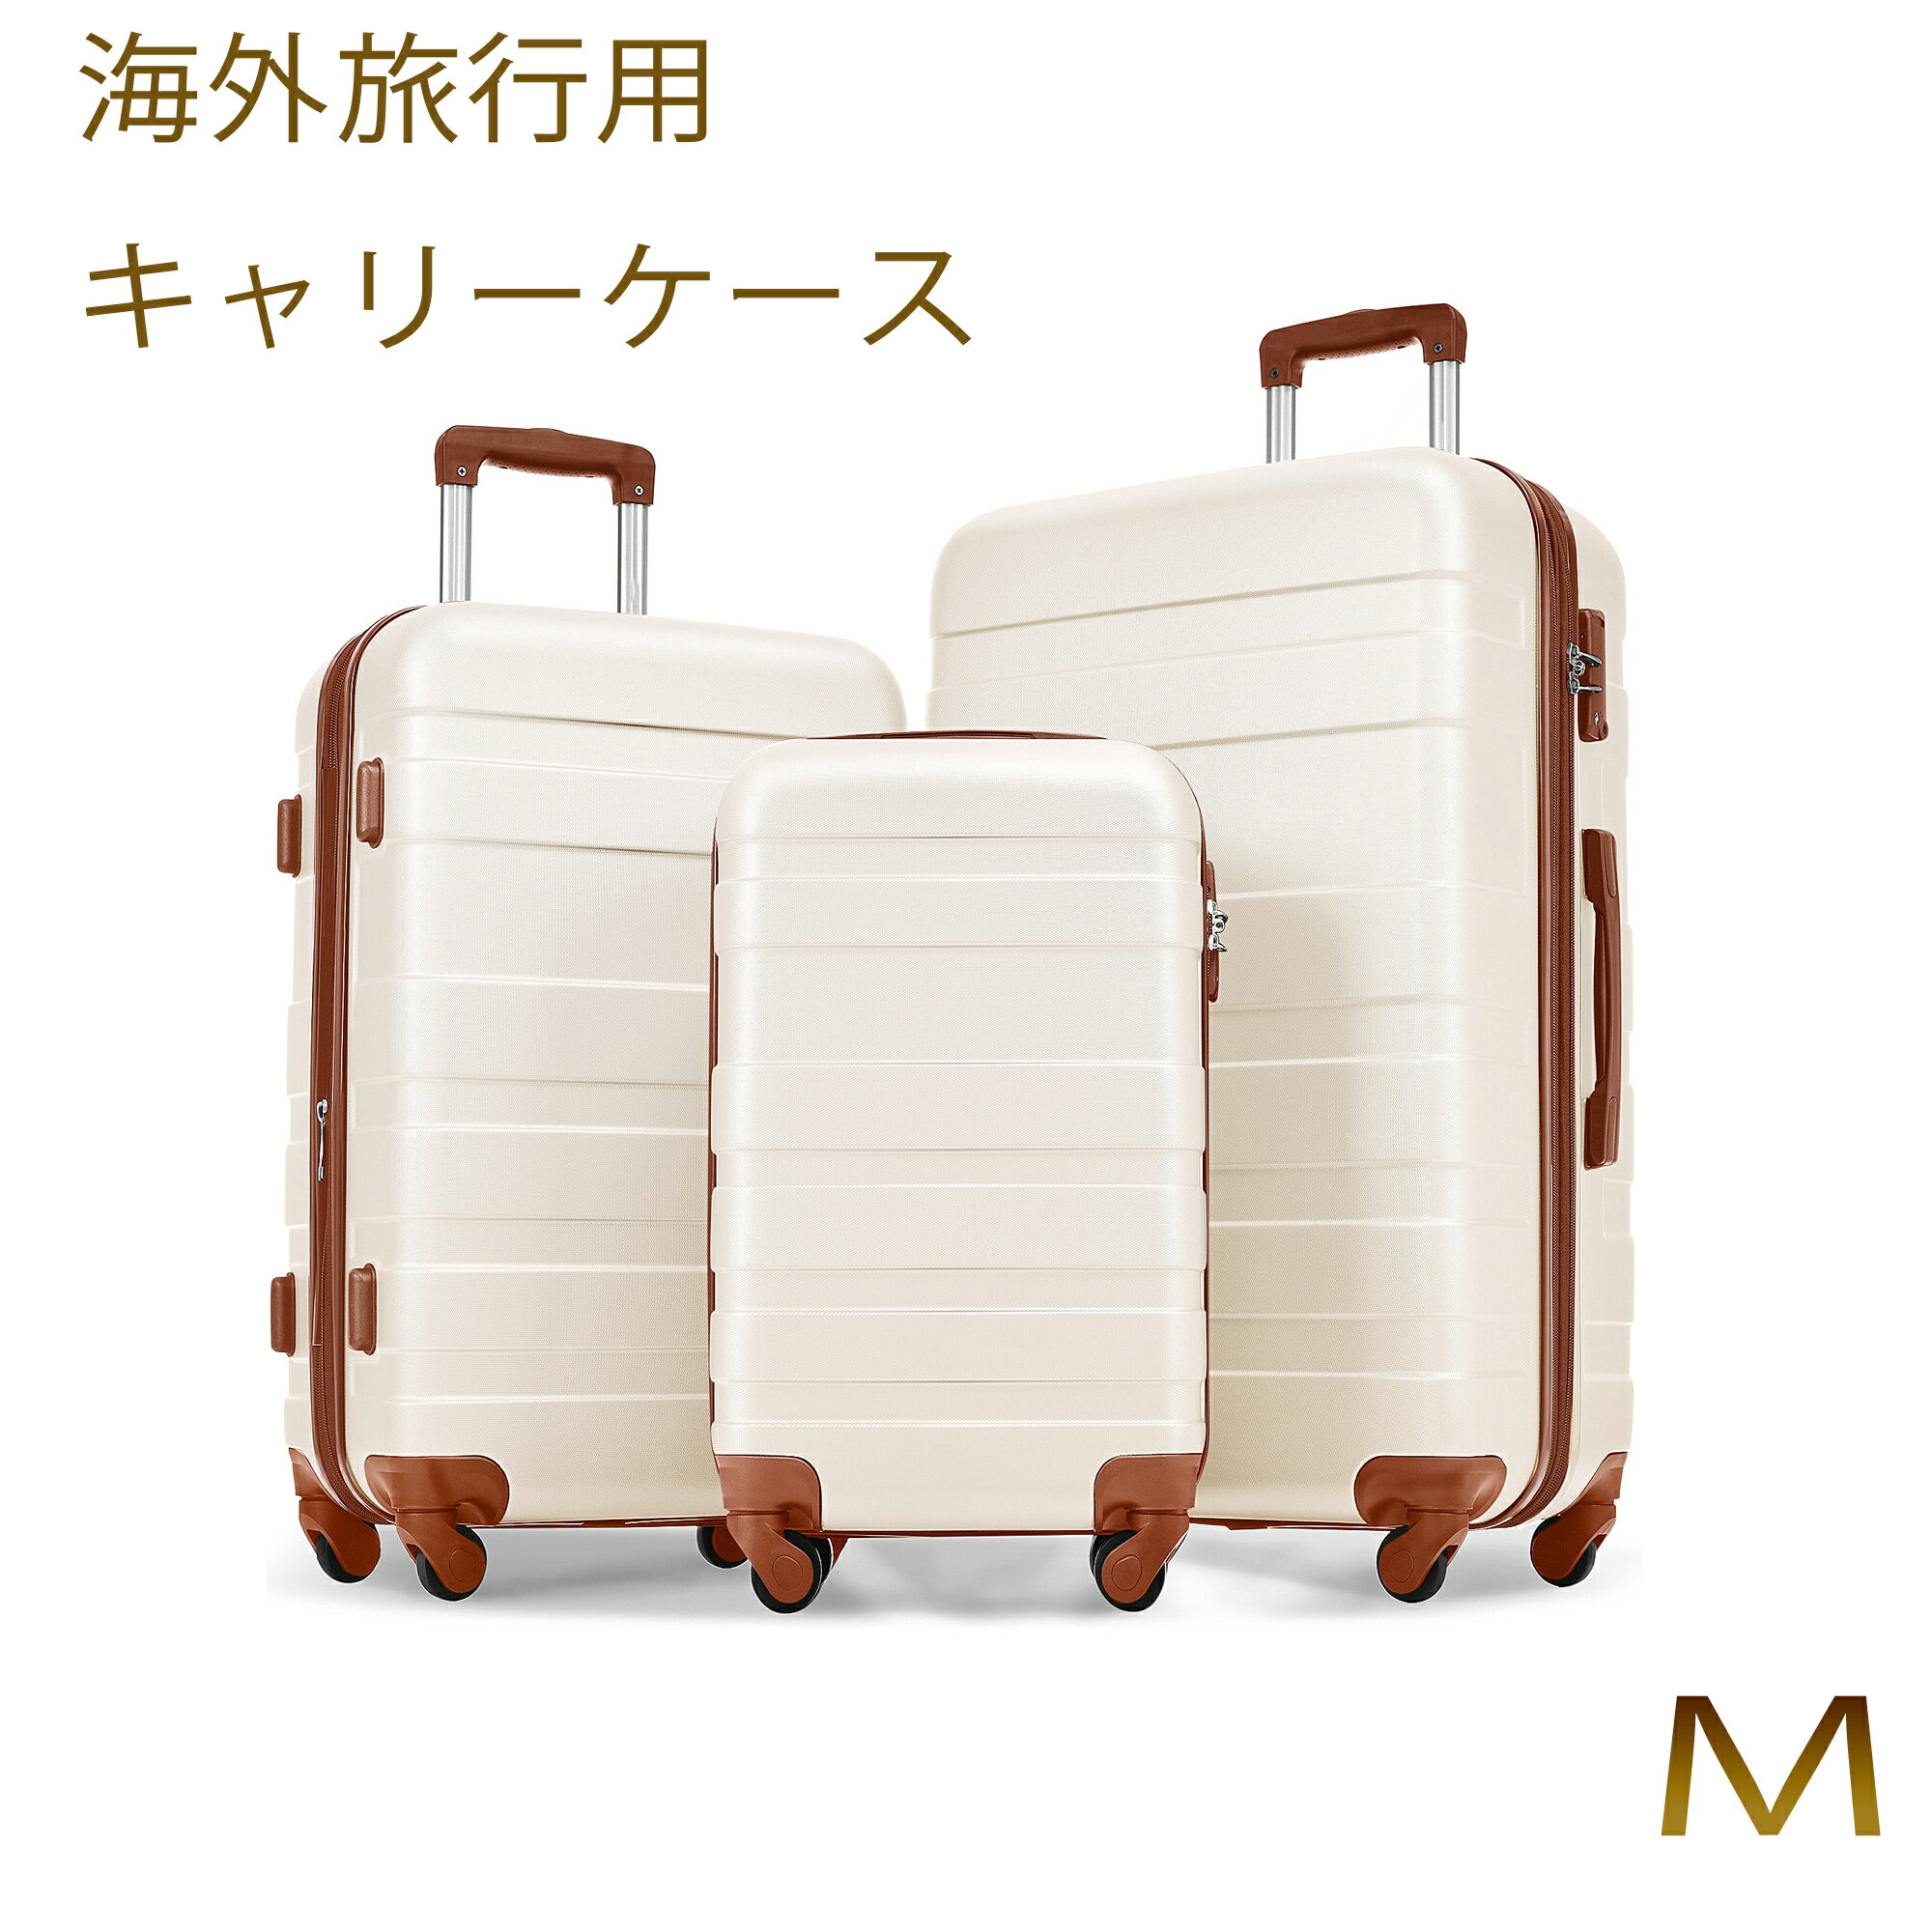 楽天萬源shop【Mサイズ】スーツケース キャリーケース TSAロック キャリーバッグ中型 かわいい 超軽量 ファスナー 海外 国内 旅行